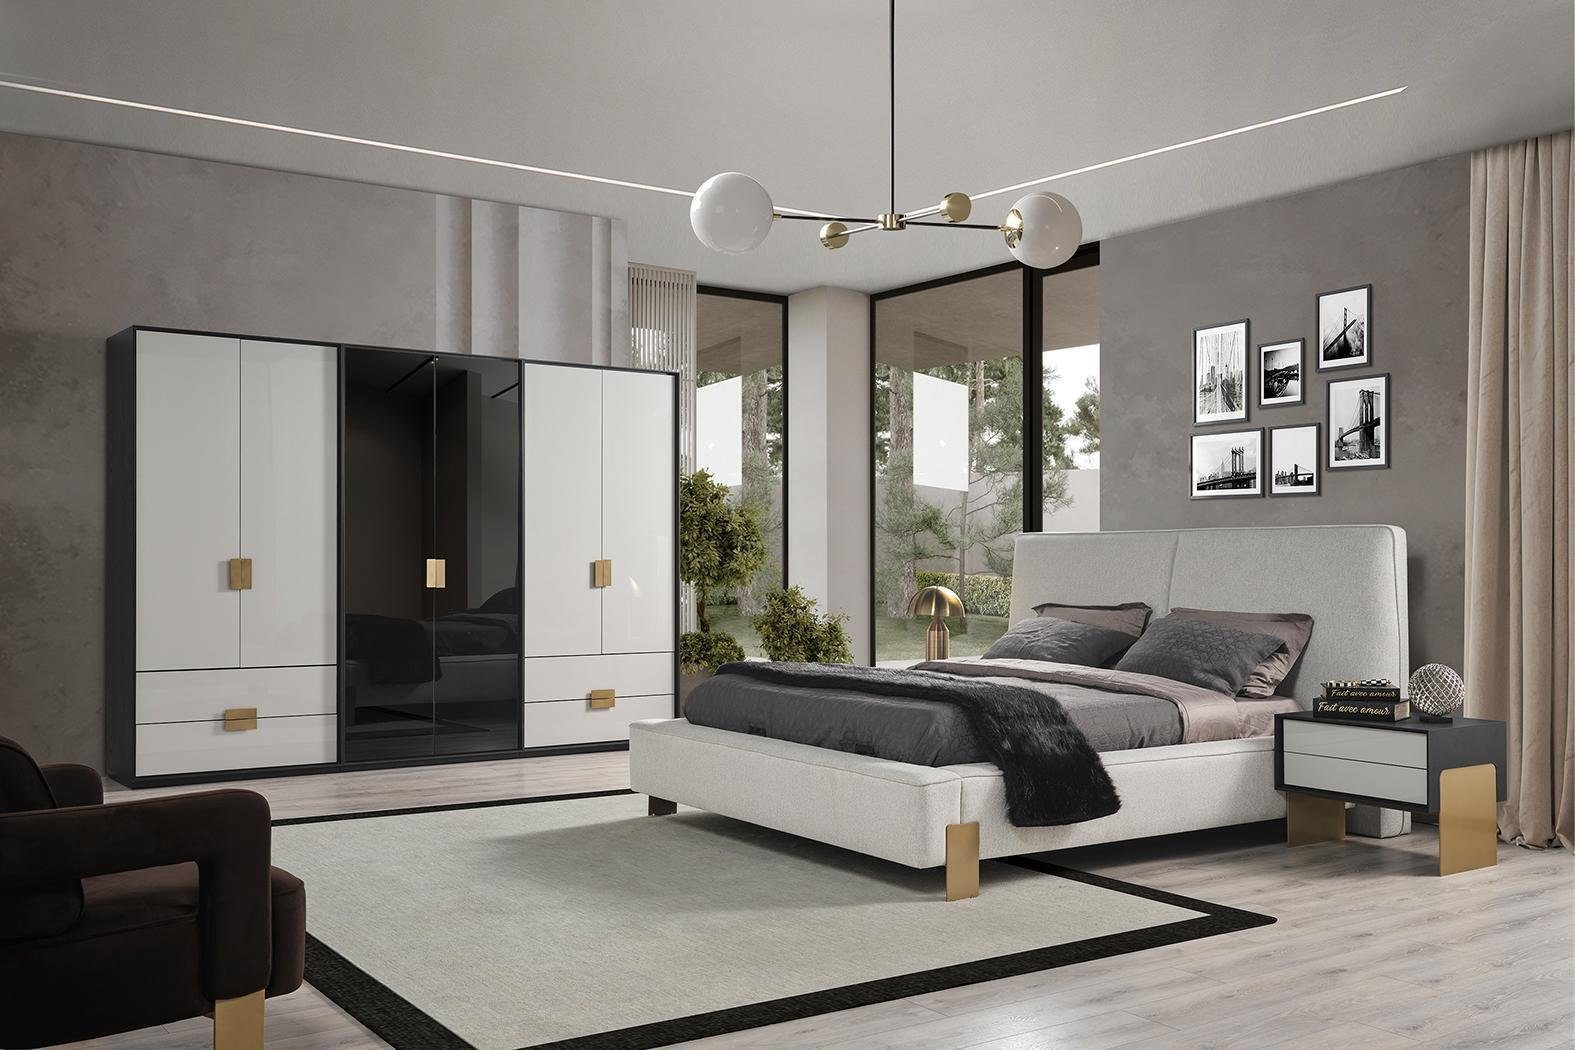 JVmoebel Schlafzimmer-Set Schlafzimmer Set Bett 2x Nachttische Kleiderschrank Luxus neu 4tlg., Made In Europe